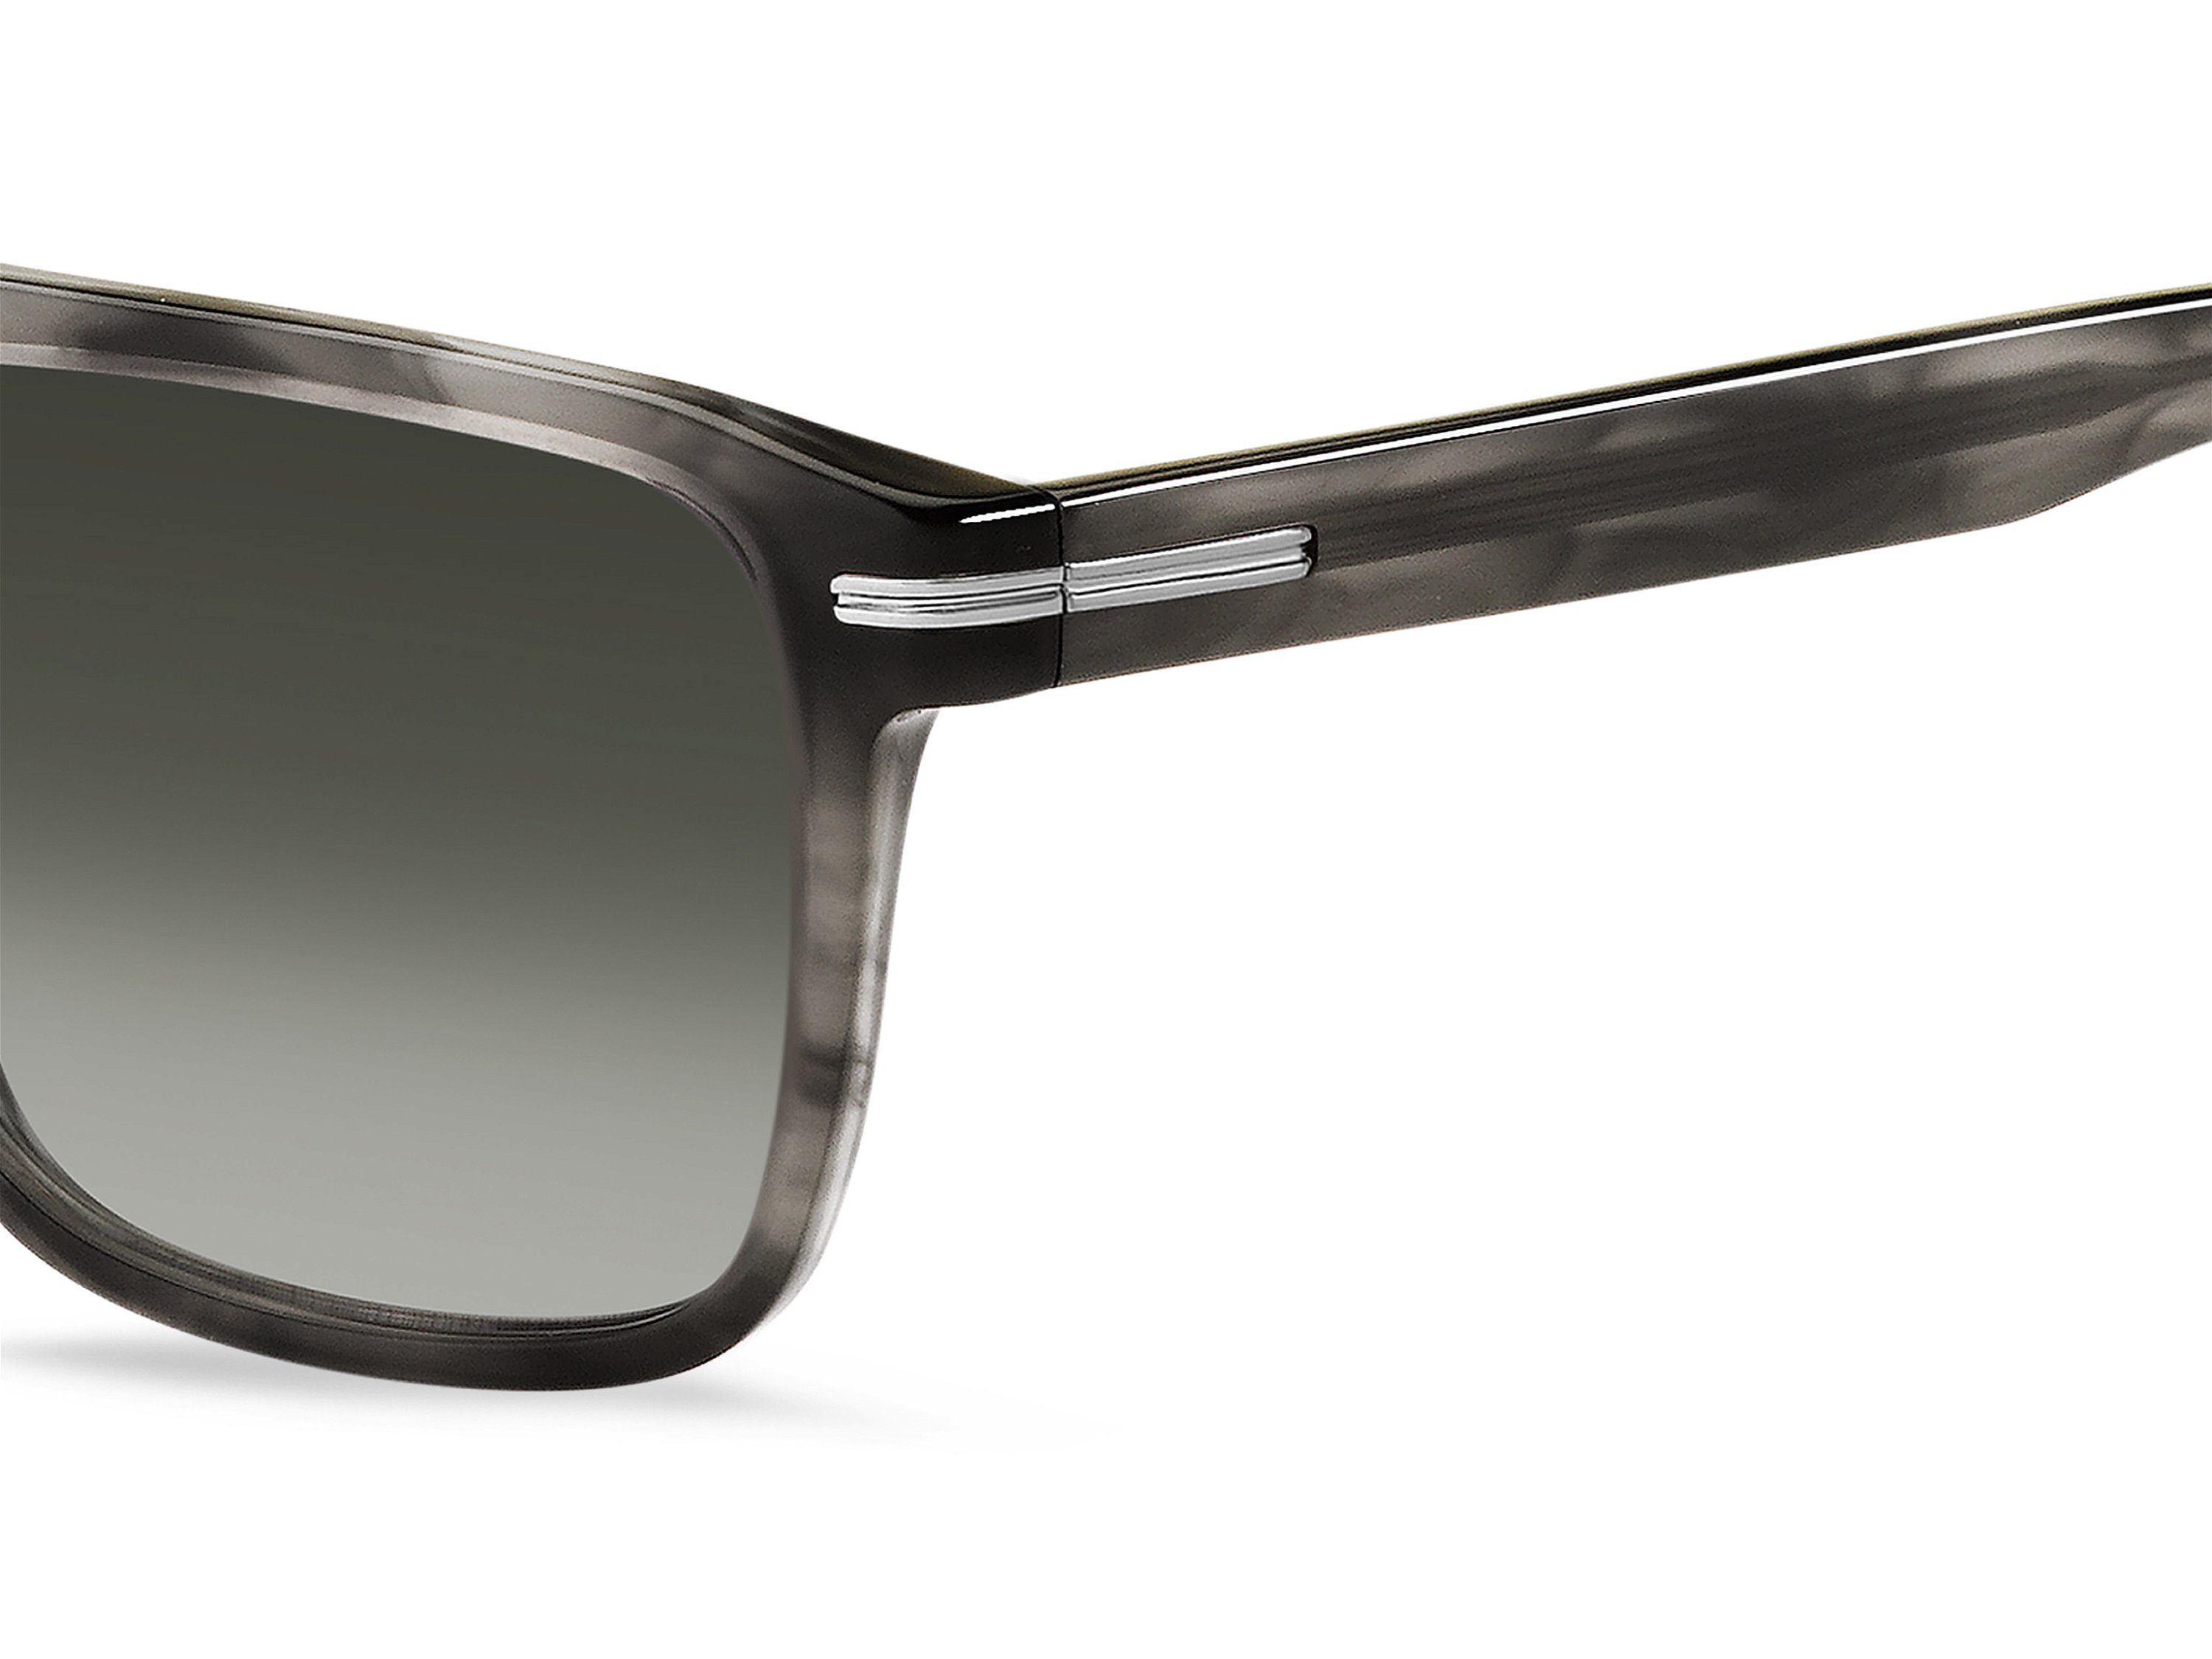 Das Bild zeigt die Sonnenbrille BOSS1599S 2W8 von der Marke BOSS in Grau.